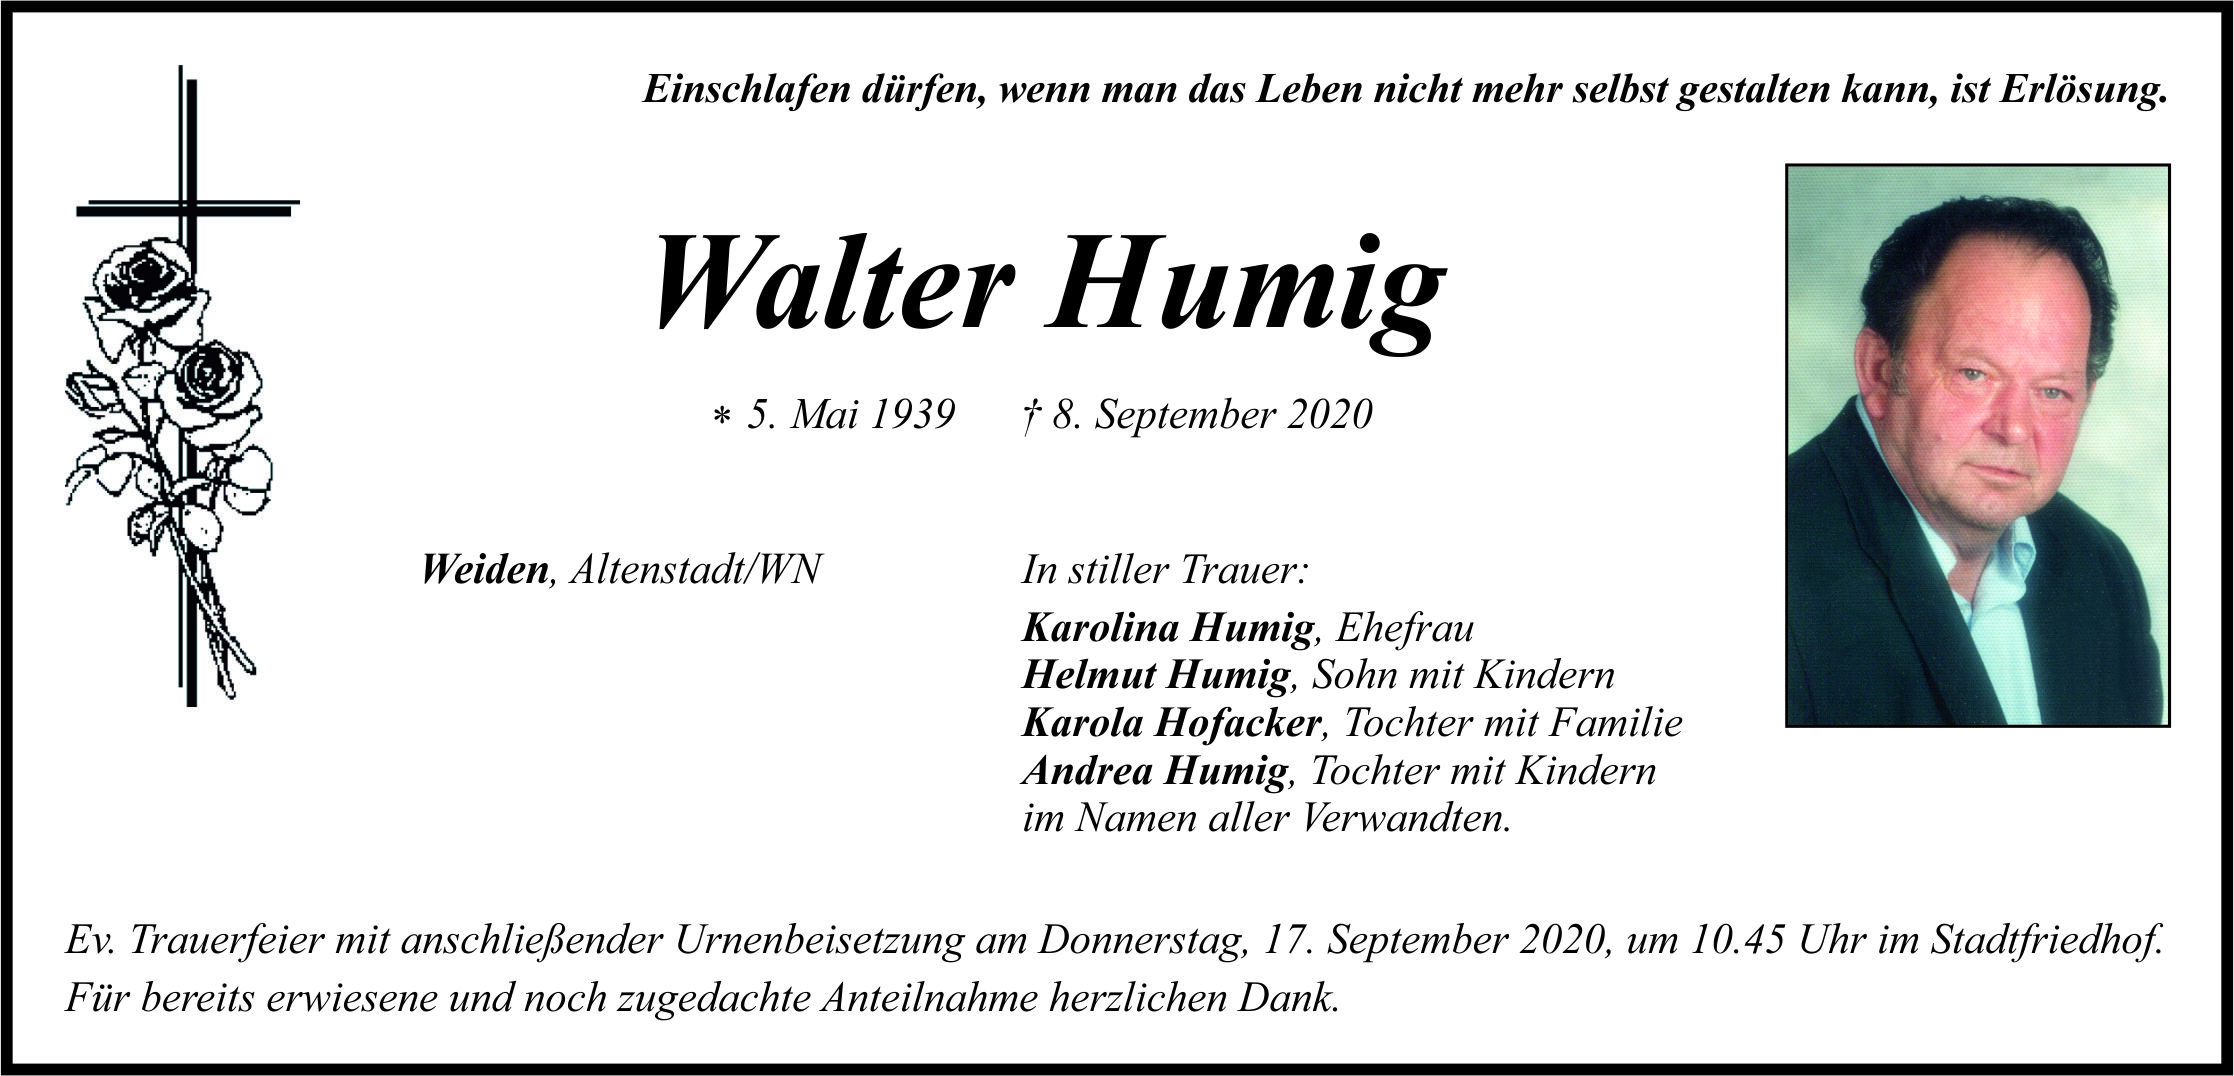 Traueranzeige Walter Humig, Weiden